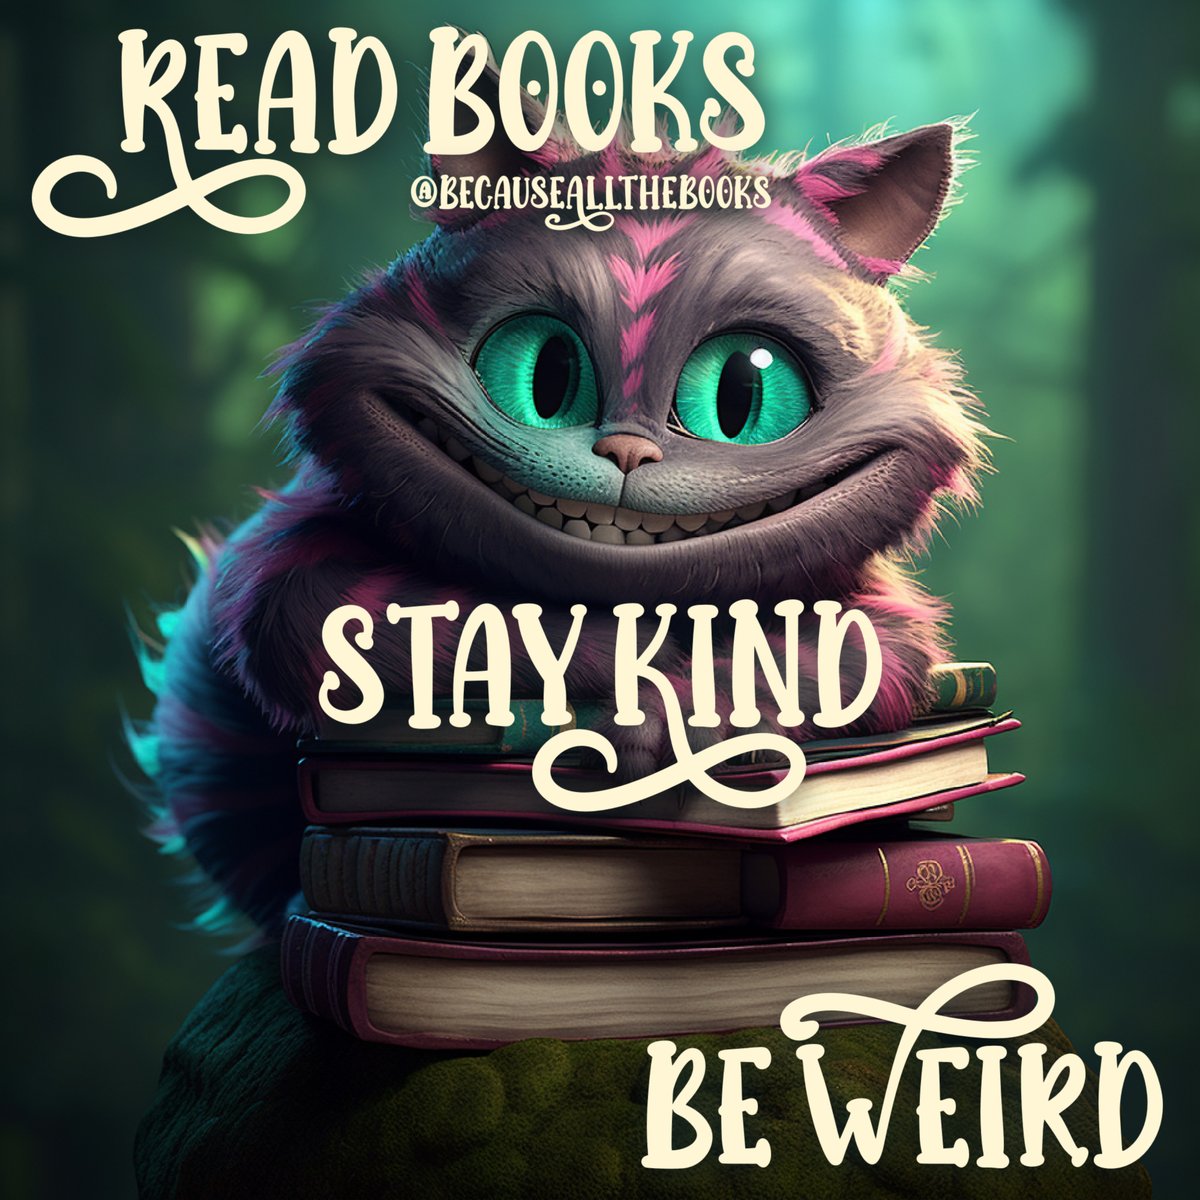 Read Books ✅
Stay Kind ✅
Be Weird ✅

#BecauseAllTheBooks #ReadBooks #StayKind #BeWeird